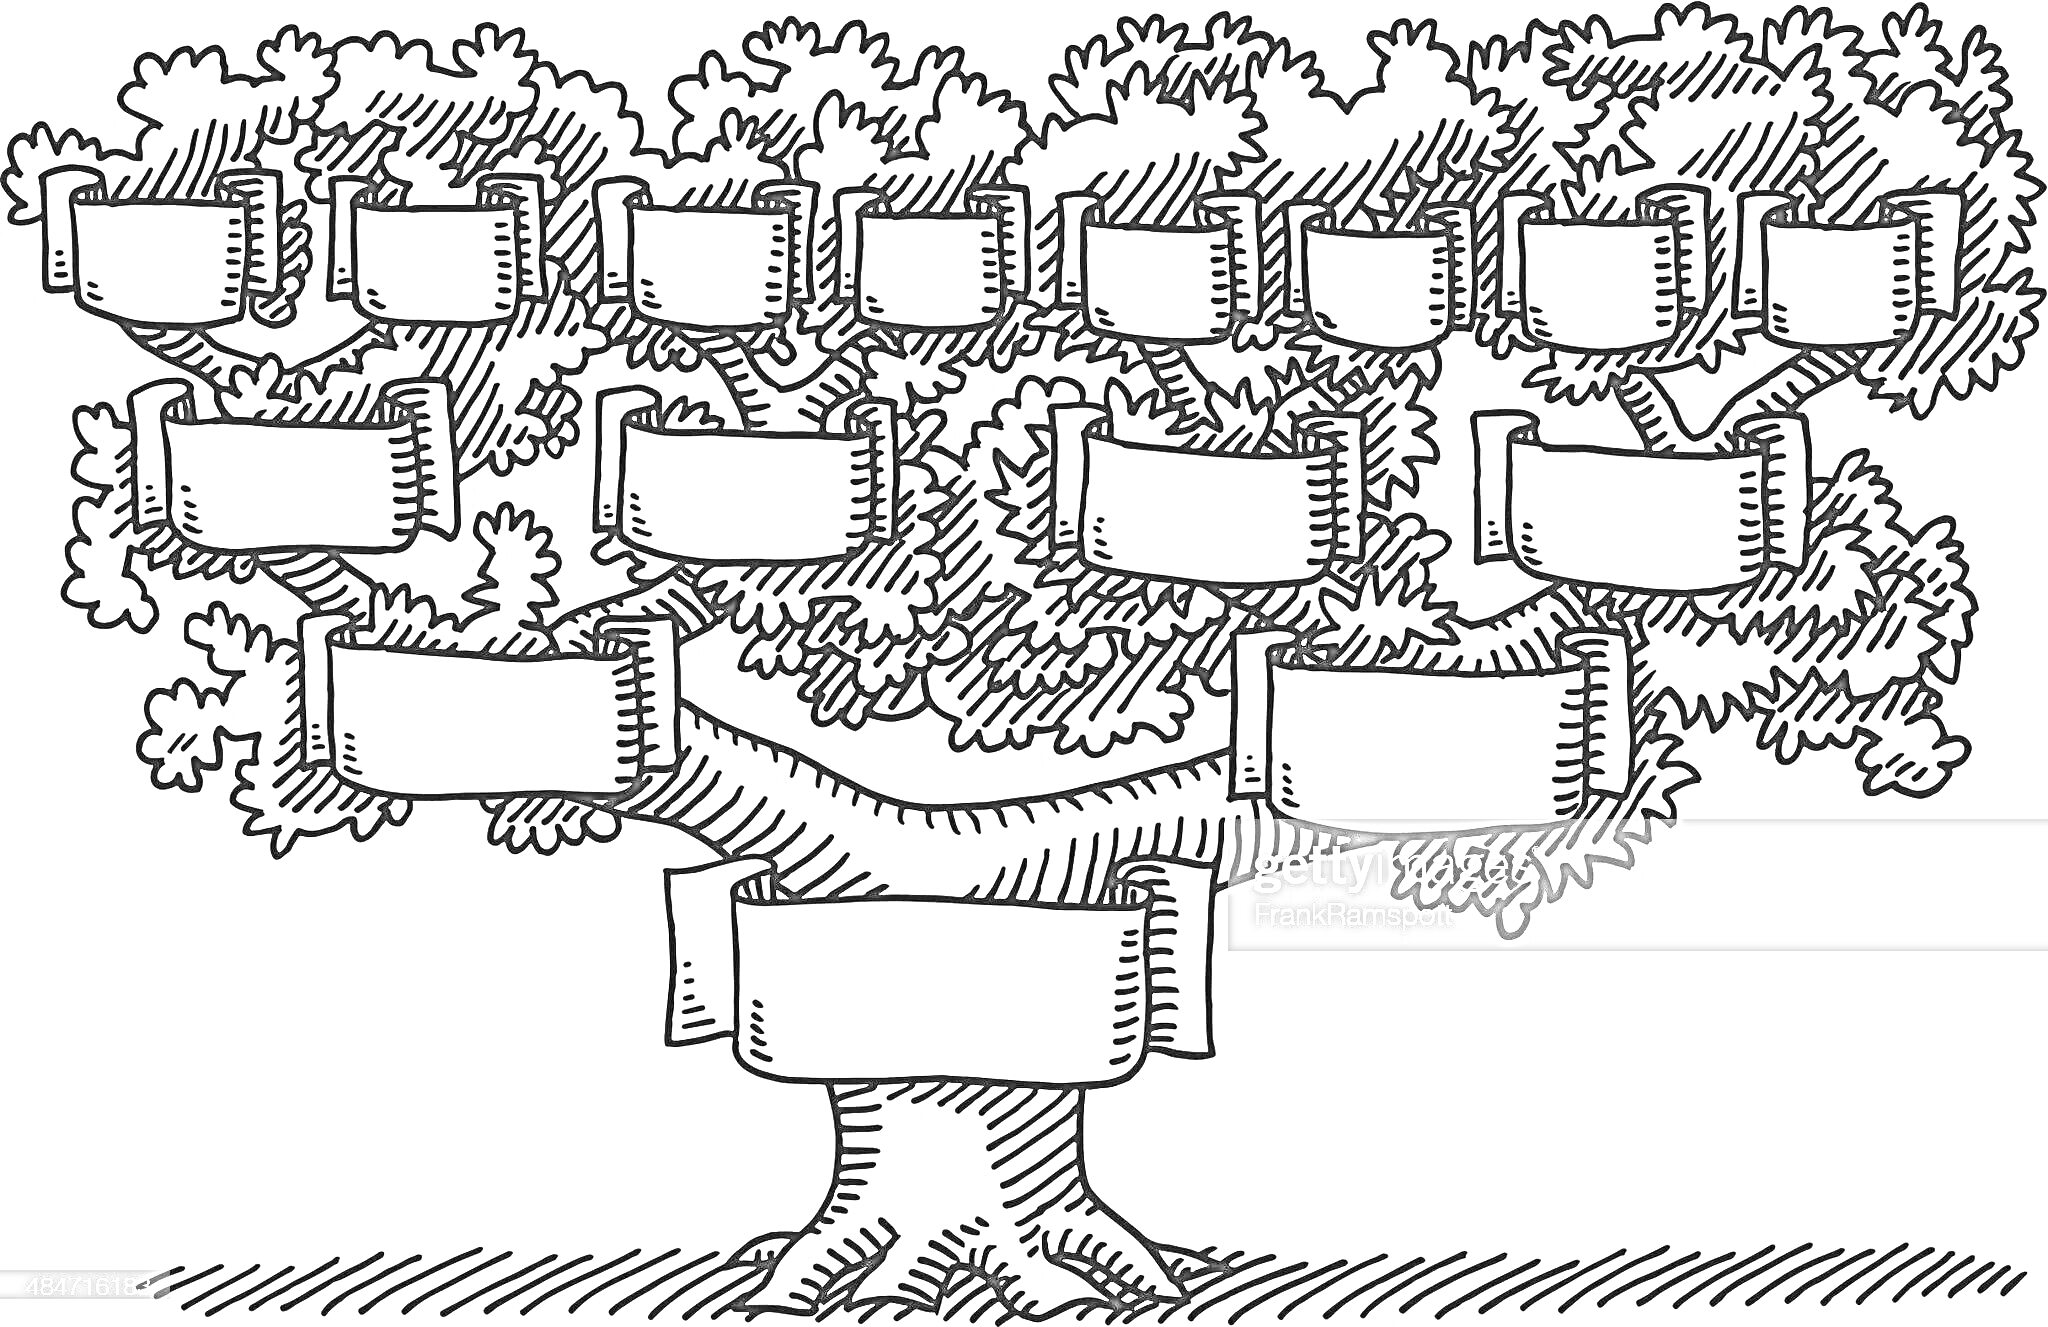 Раскраска Генеалогическое древо семьи с пустыми табличками для надписей и рисунком дерева